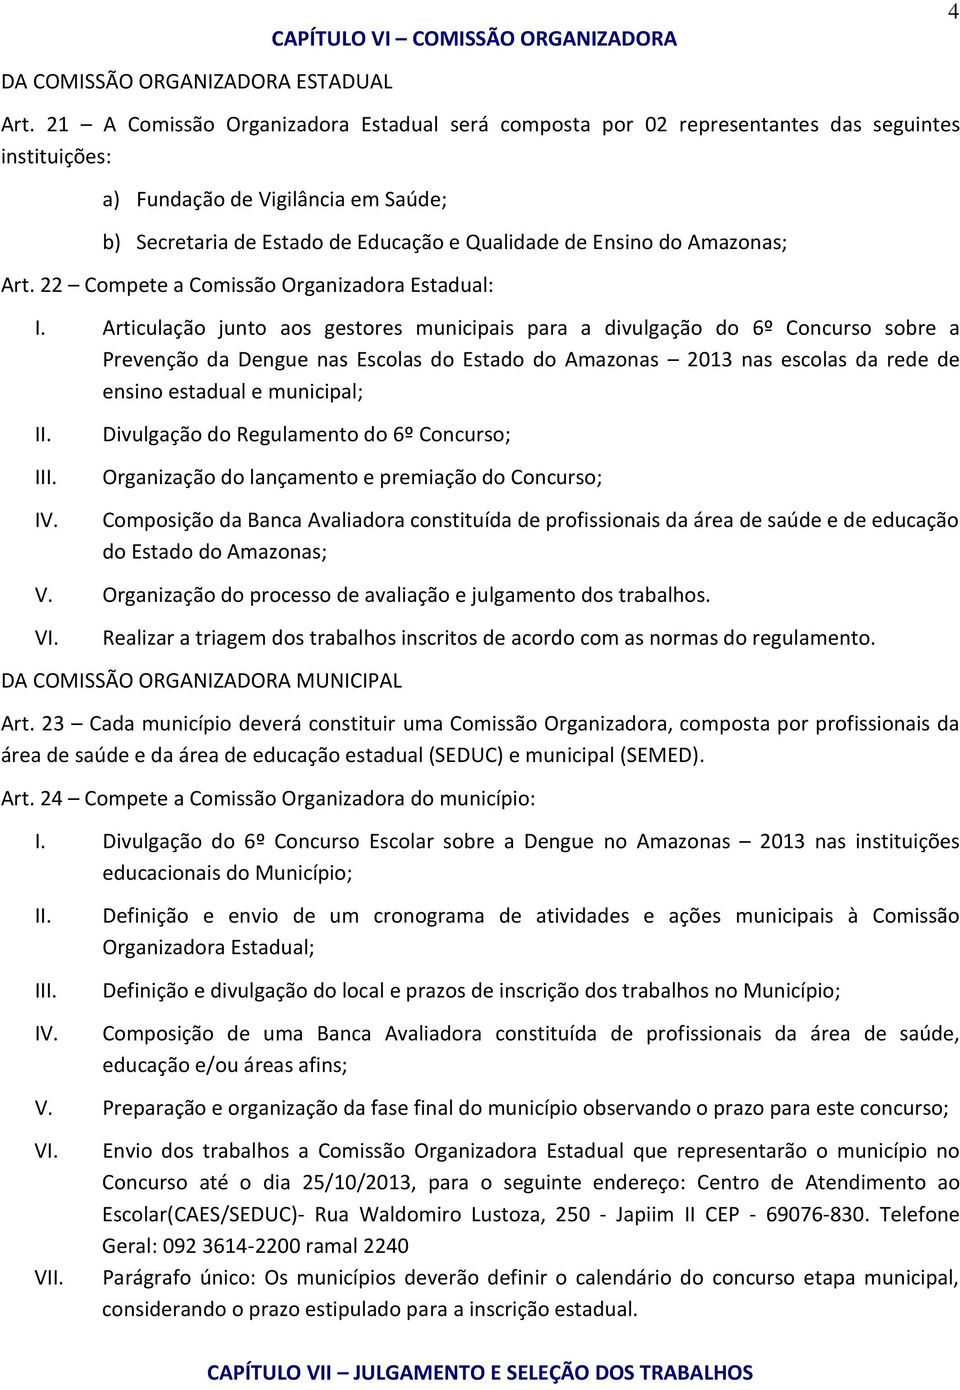 Amazonas; Art. 22 Compete a Comissão Organizadora Estadual: I.